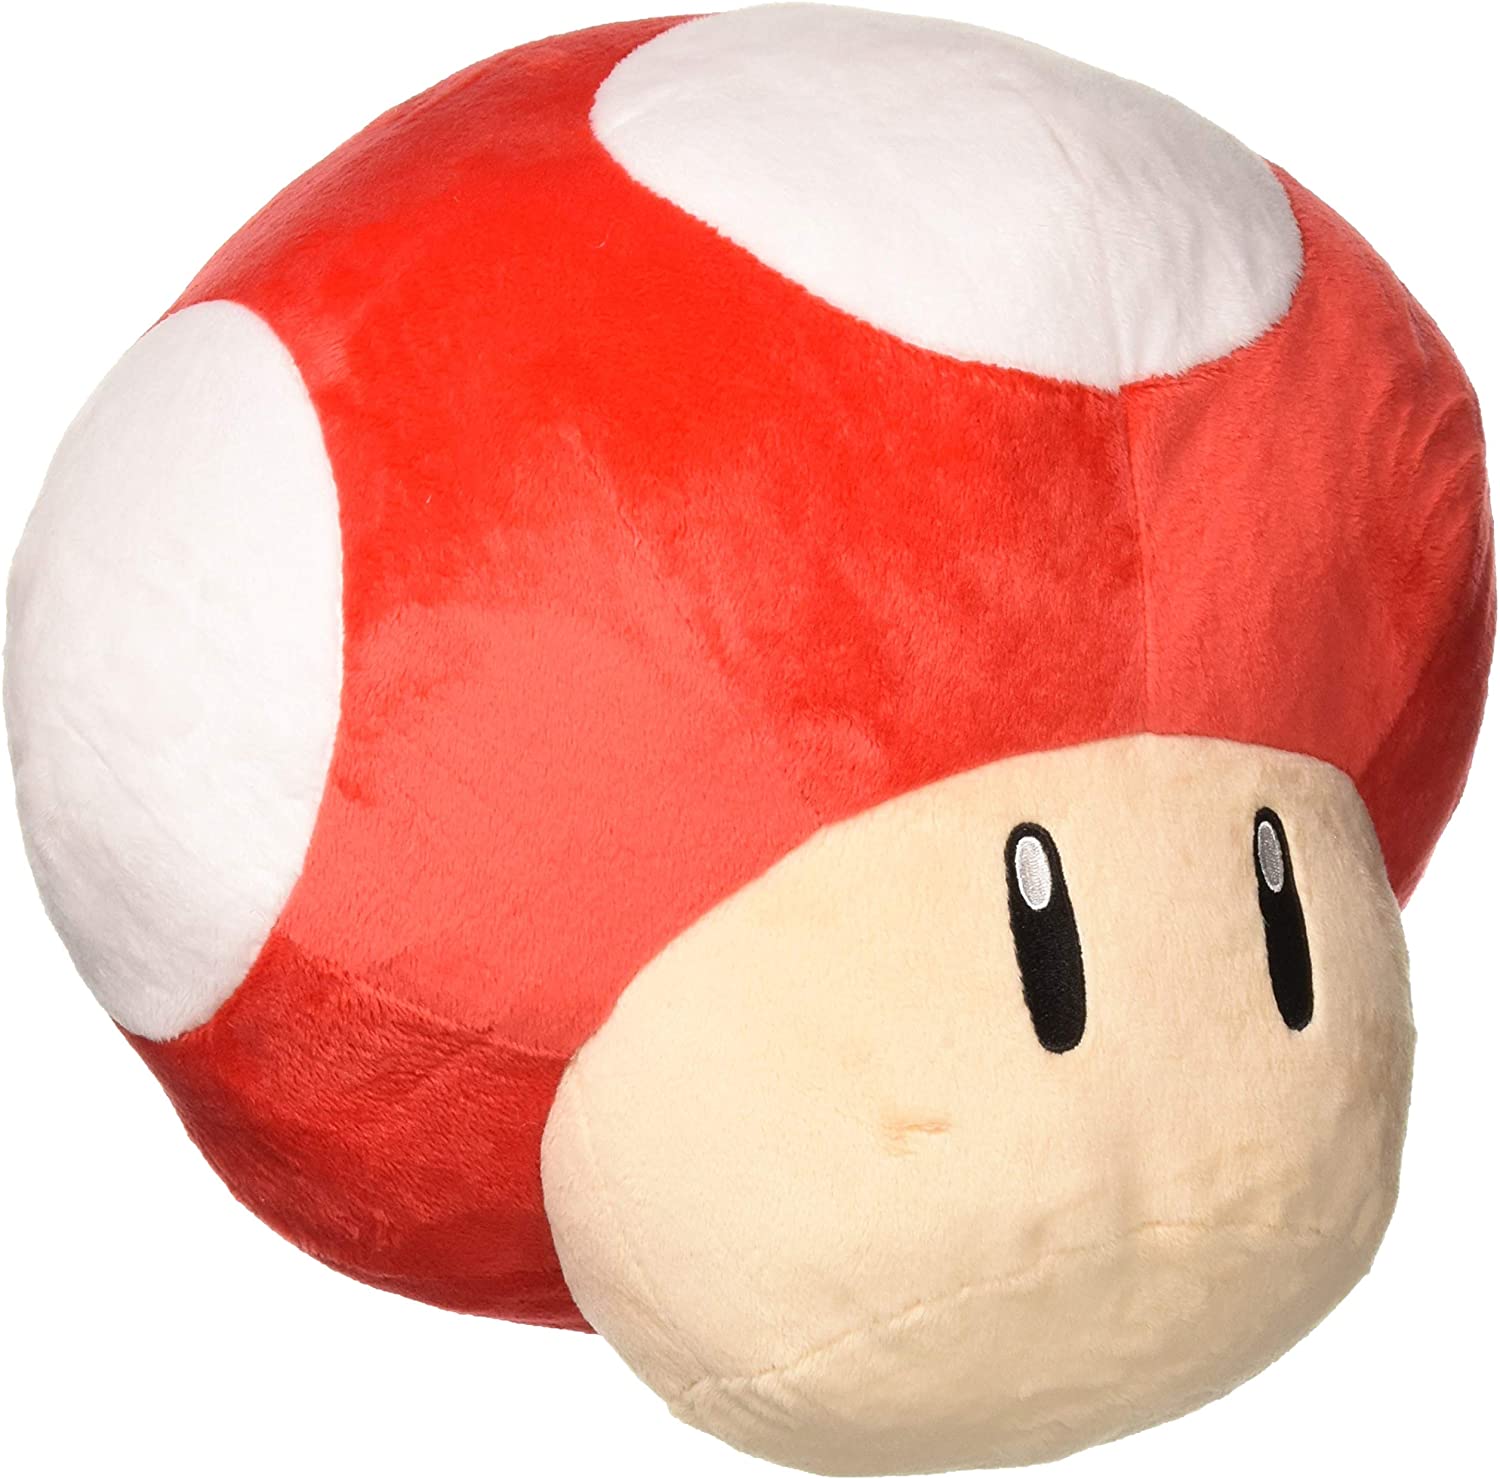 Mario Mushroom Pillow - KibrisPDR